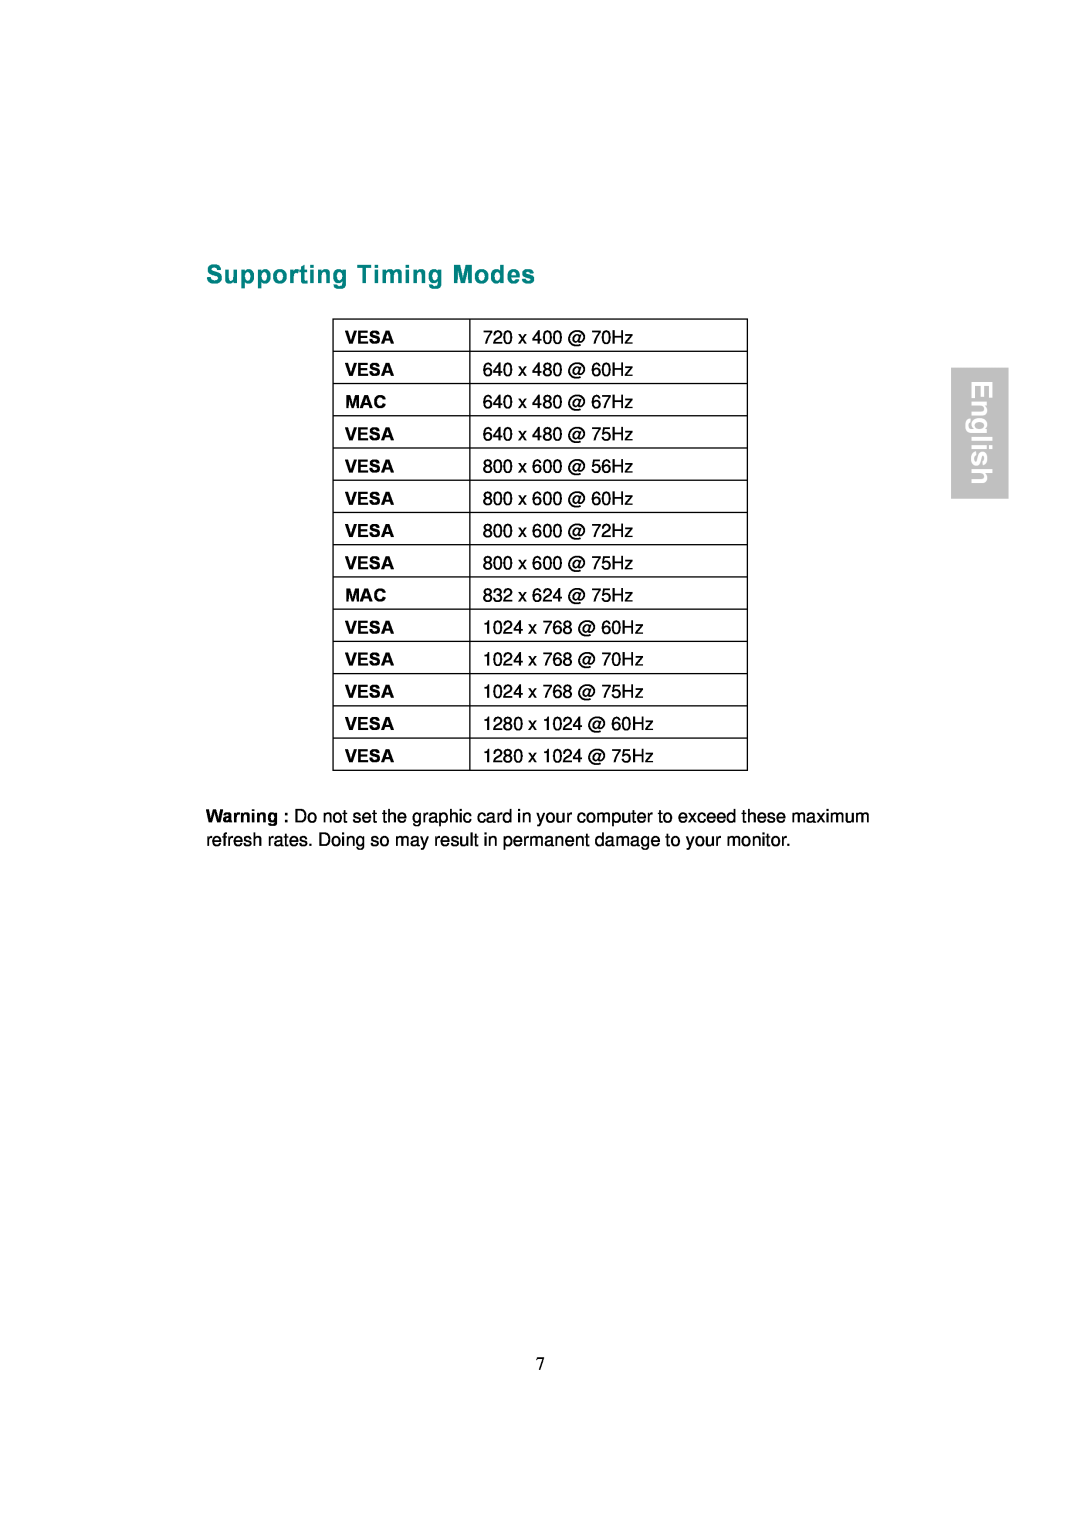 AOC 177Sa-1 manual Supporting Timing Modes, English 